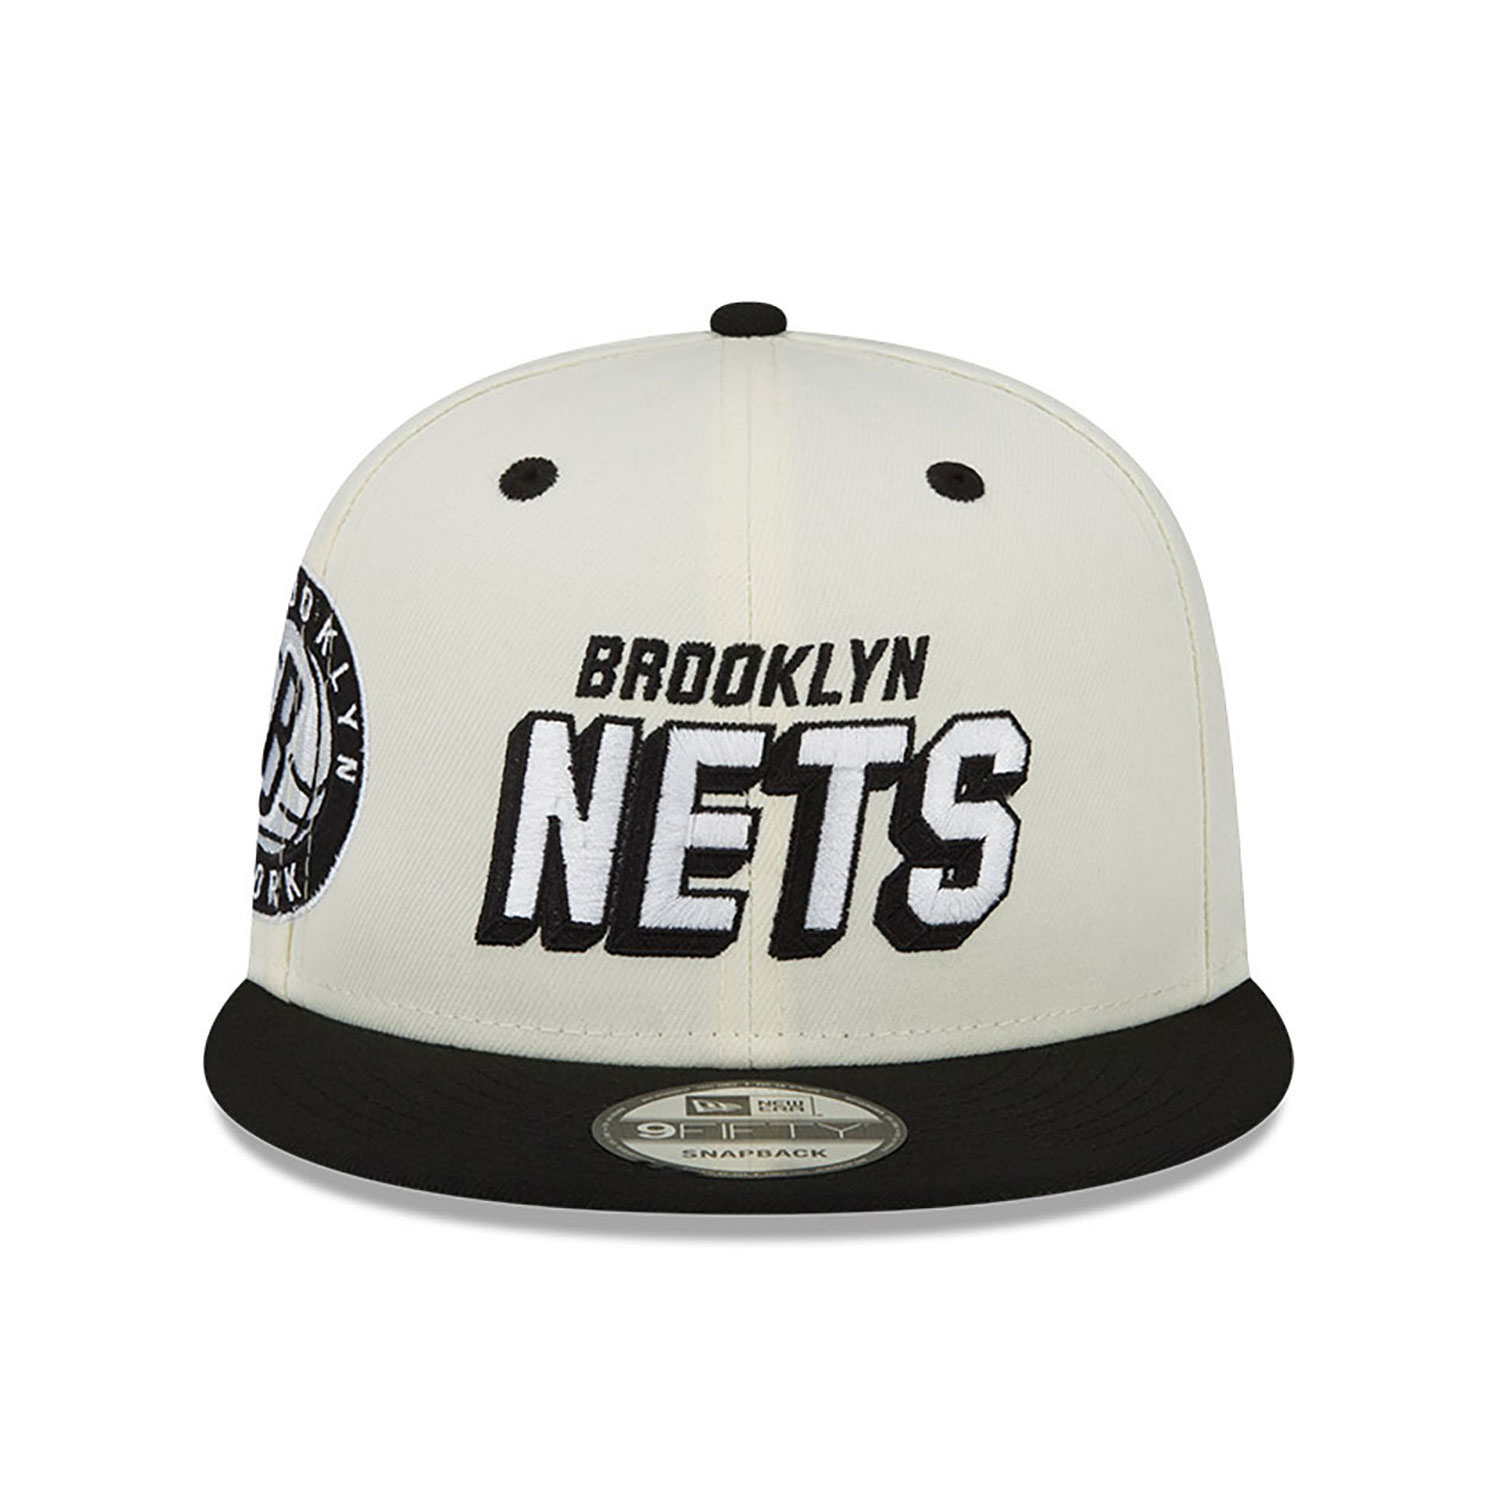 Brooklyn Nets Awake White 9FIFTY Snapback Cap